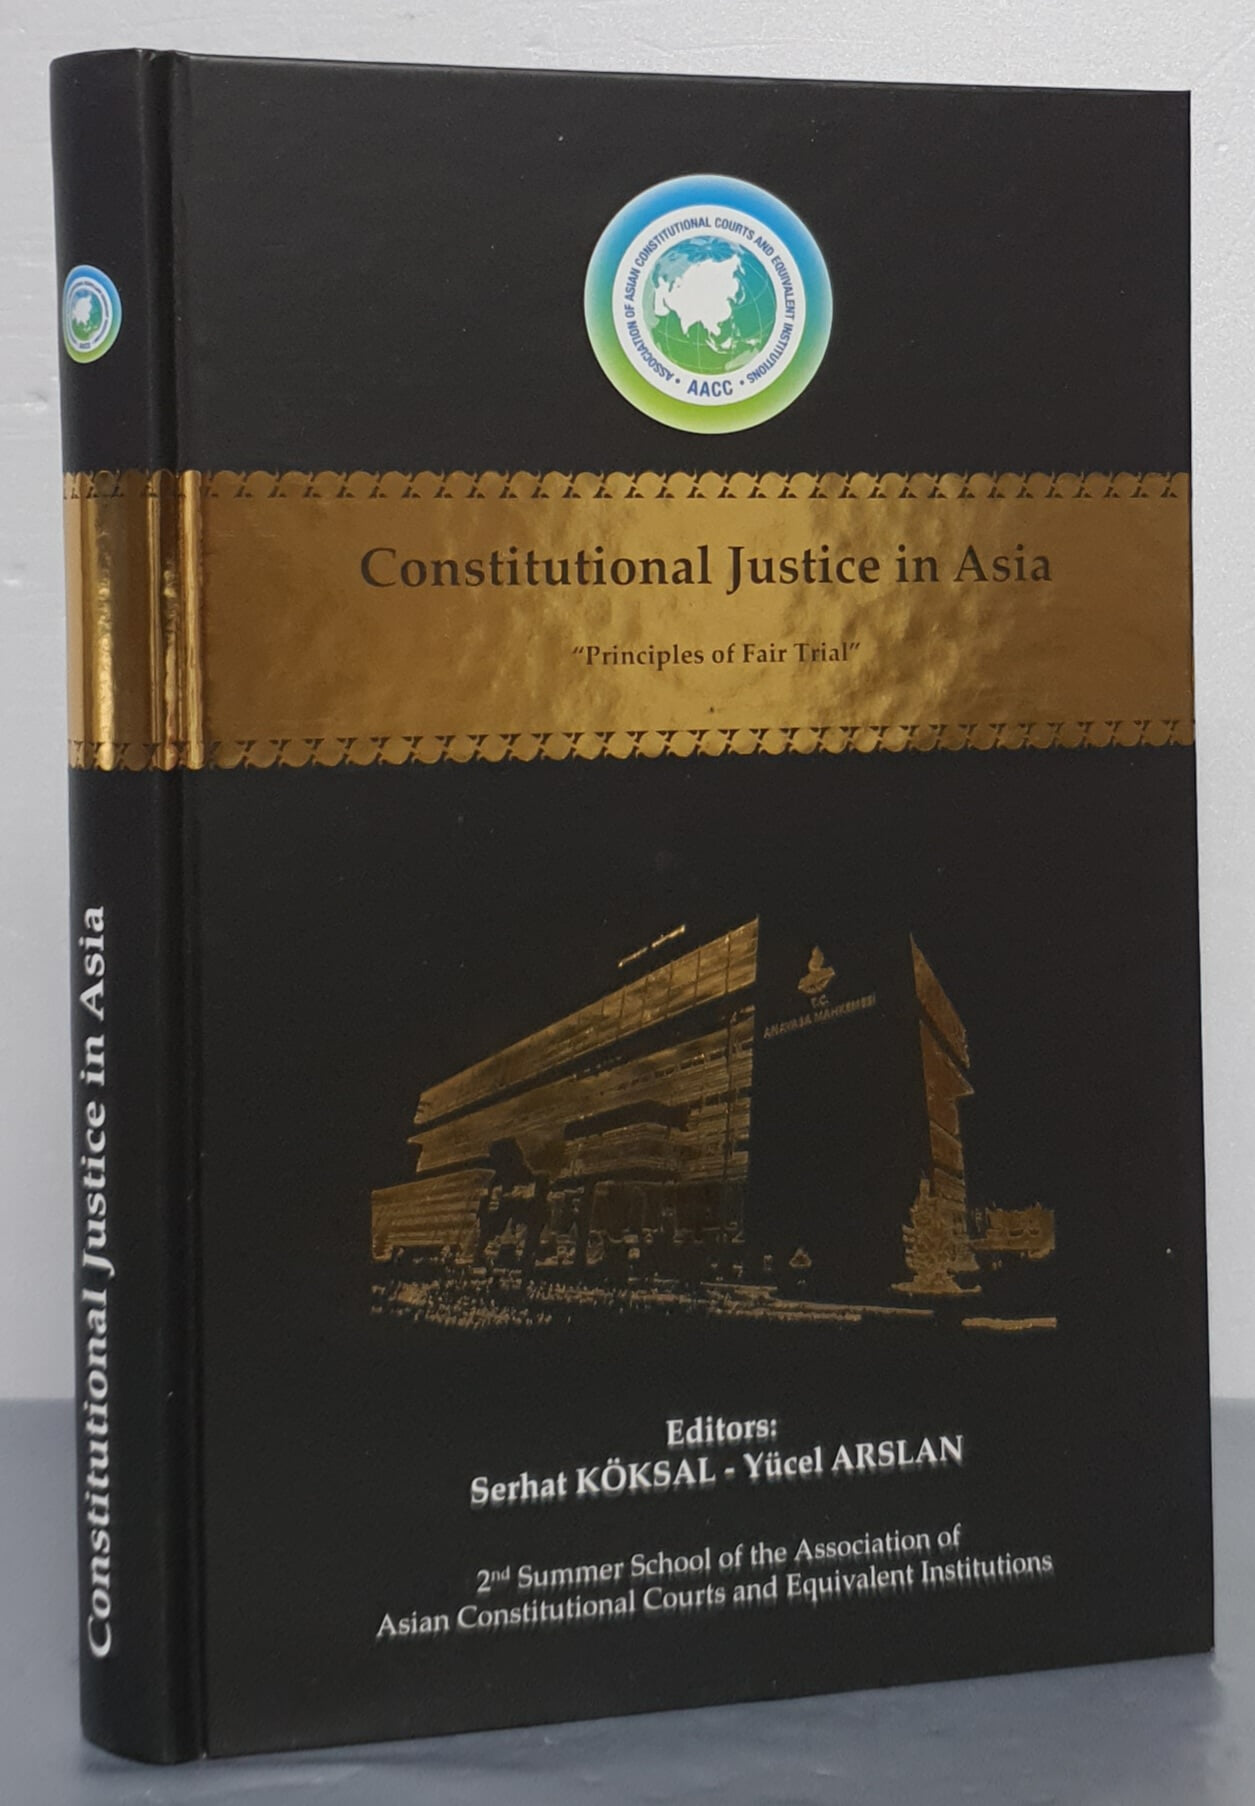 Constitutional Justice in Asia - Principles of Fair Trial